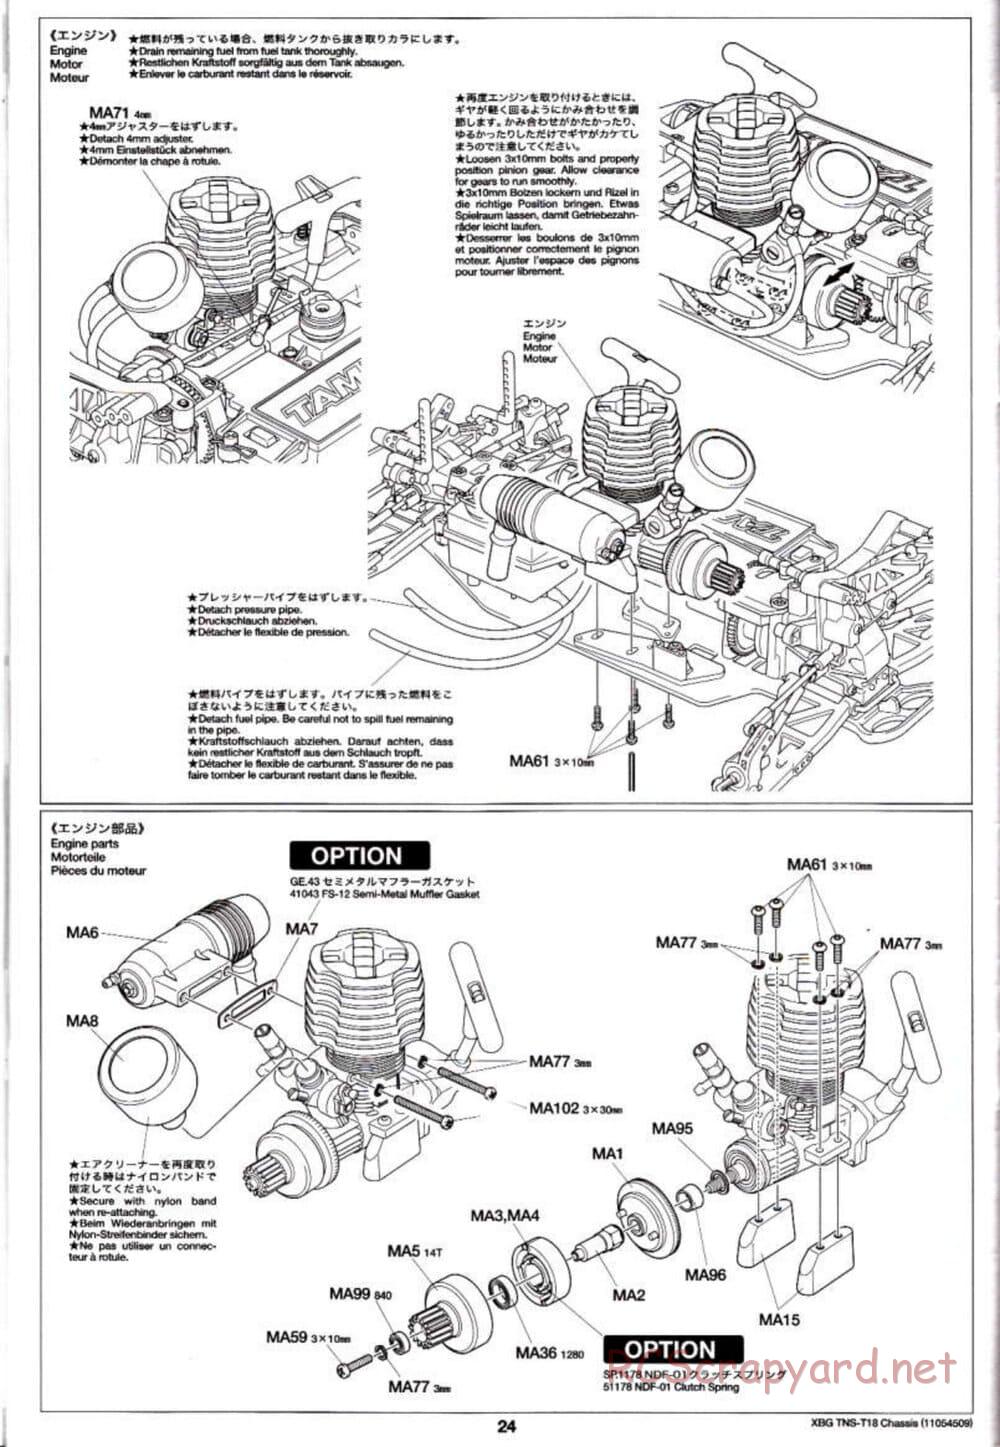 Tamiya - TNS-T18 Chassis - Manual - Page 24